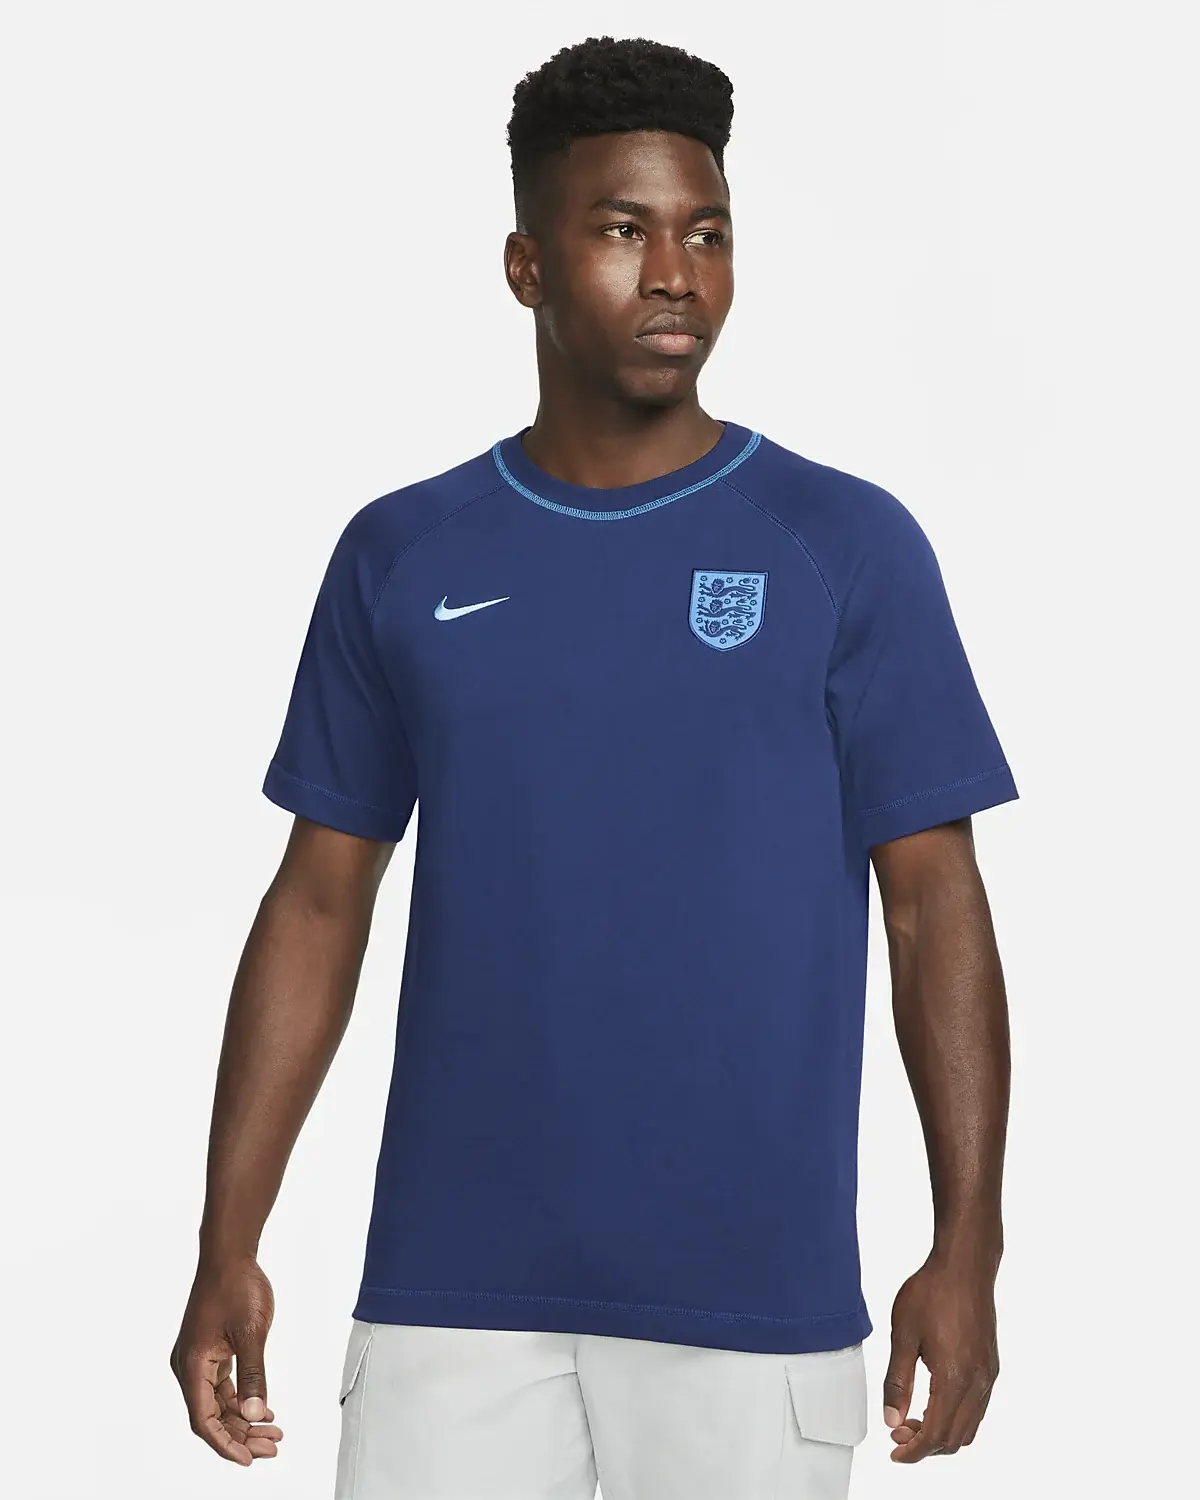 Nike Inghilterra. 1